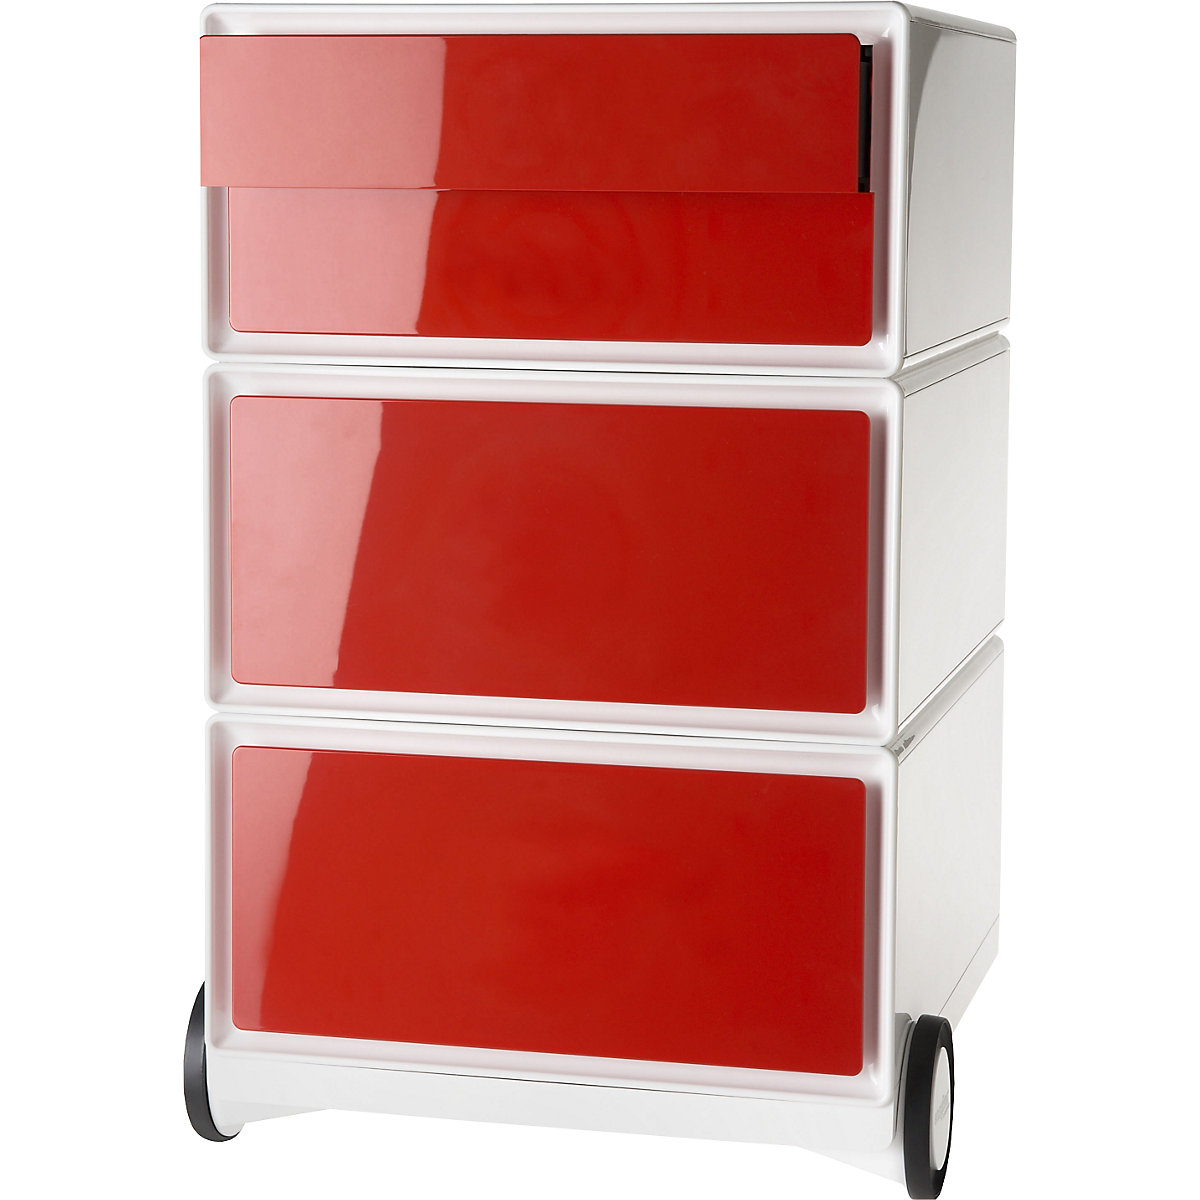 Pokretni ladičar easyBox® – Paperflow, 2 ladice, 2 plitke ladice, u bijeloj / crvenoj boji